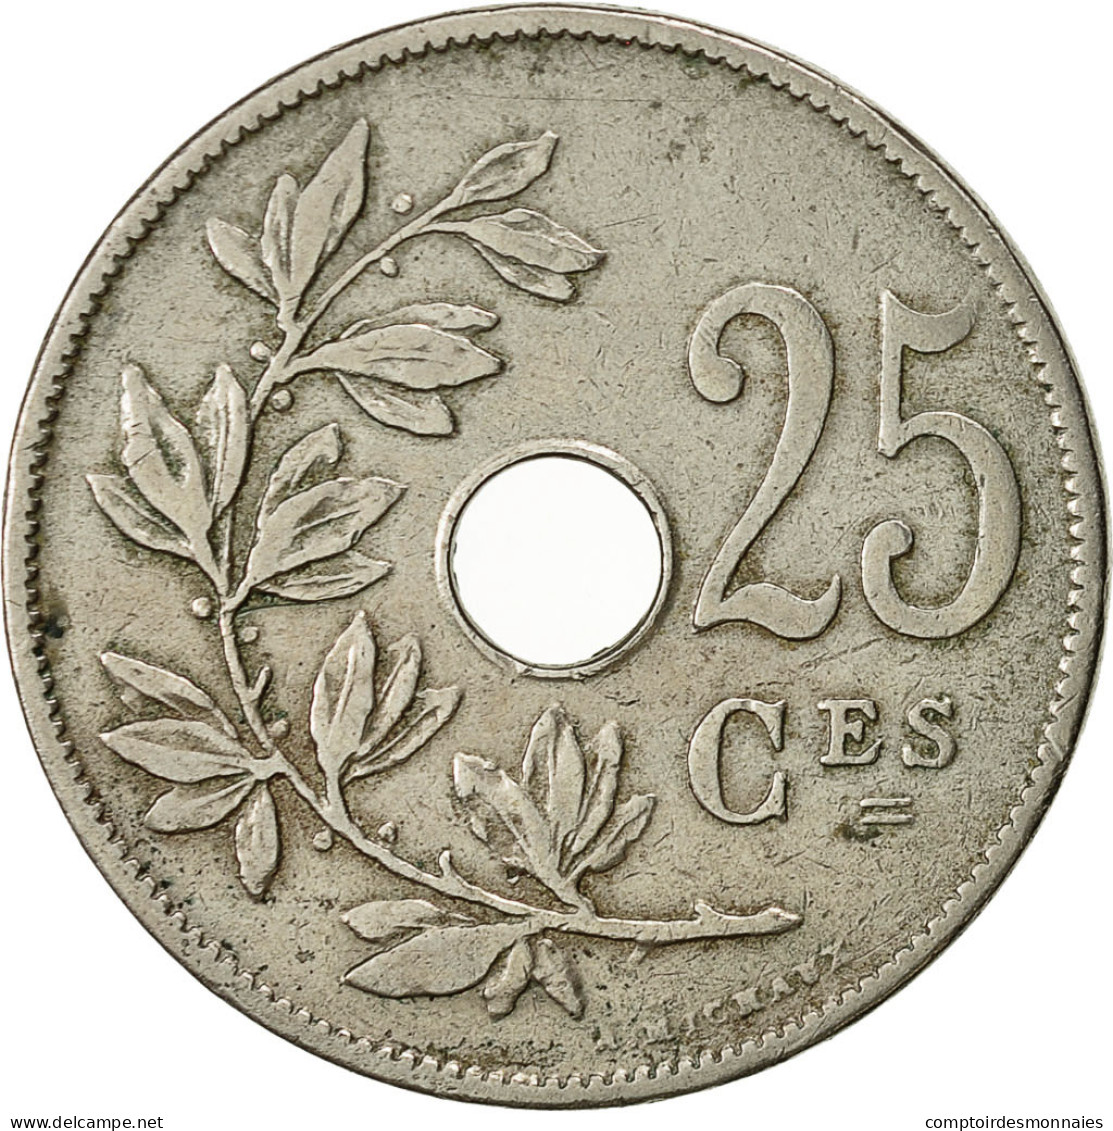 Monnaie, Belgique, 25 Centimes, 1908, TTB+, Copper-nickel, KM:62 - 25 Centimes